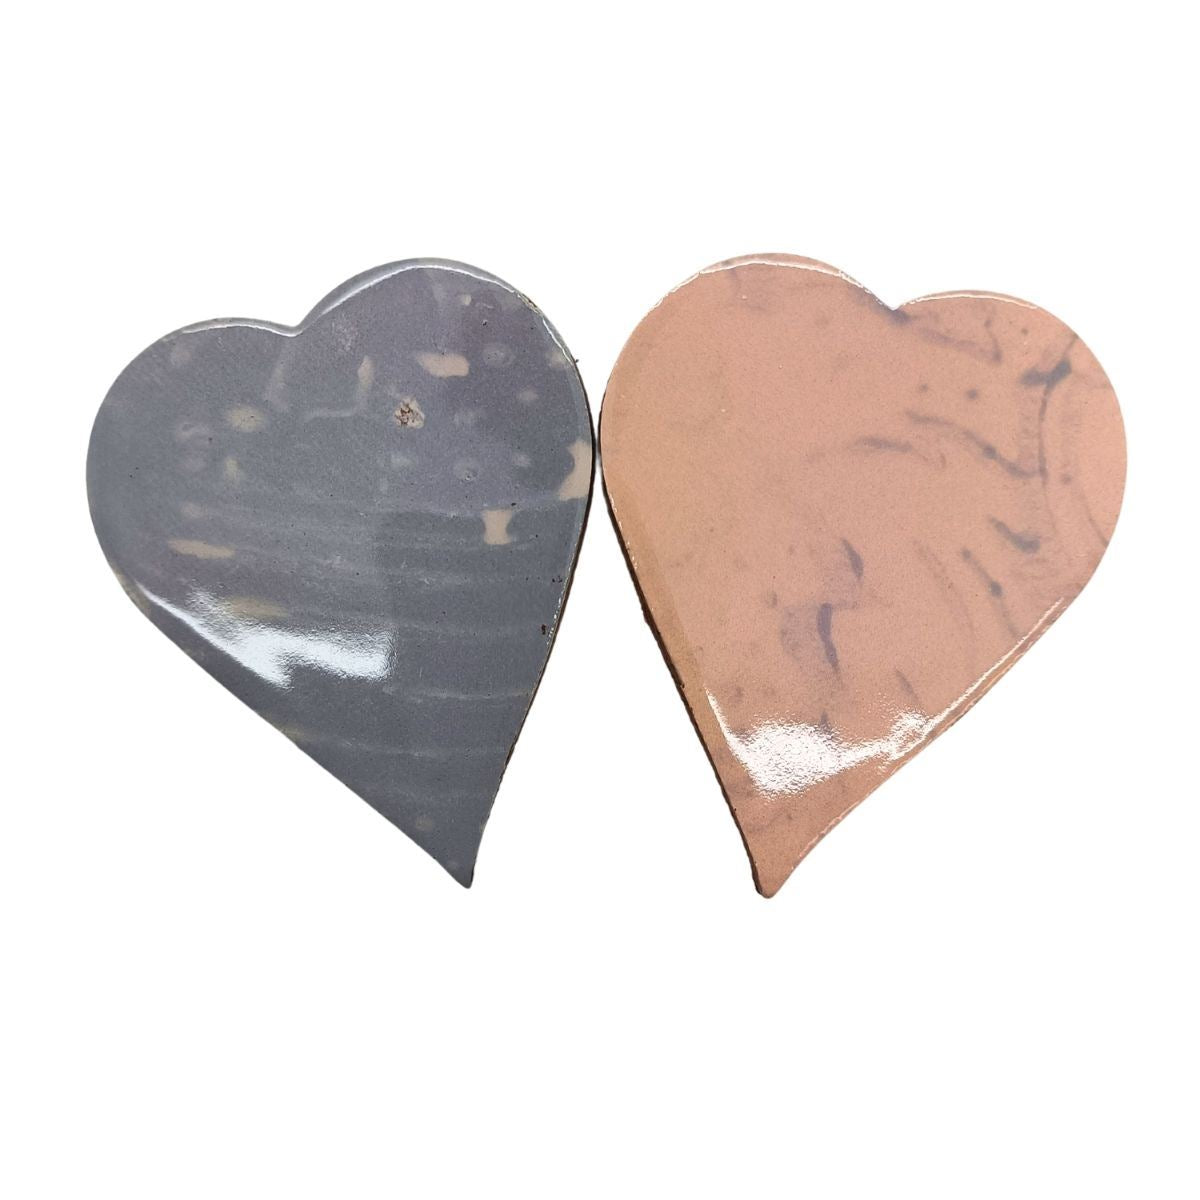 Handmade Shapes - Blush glazed large Hearts: Pack of 2